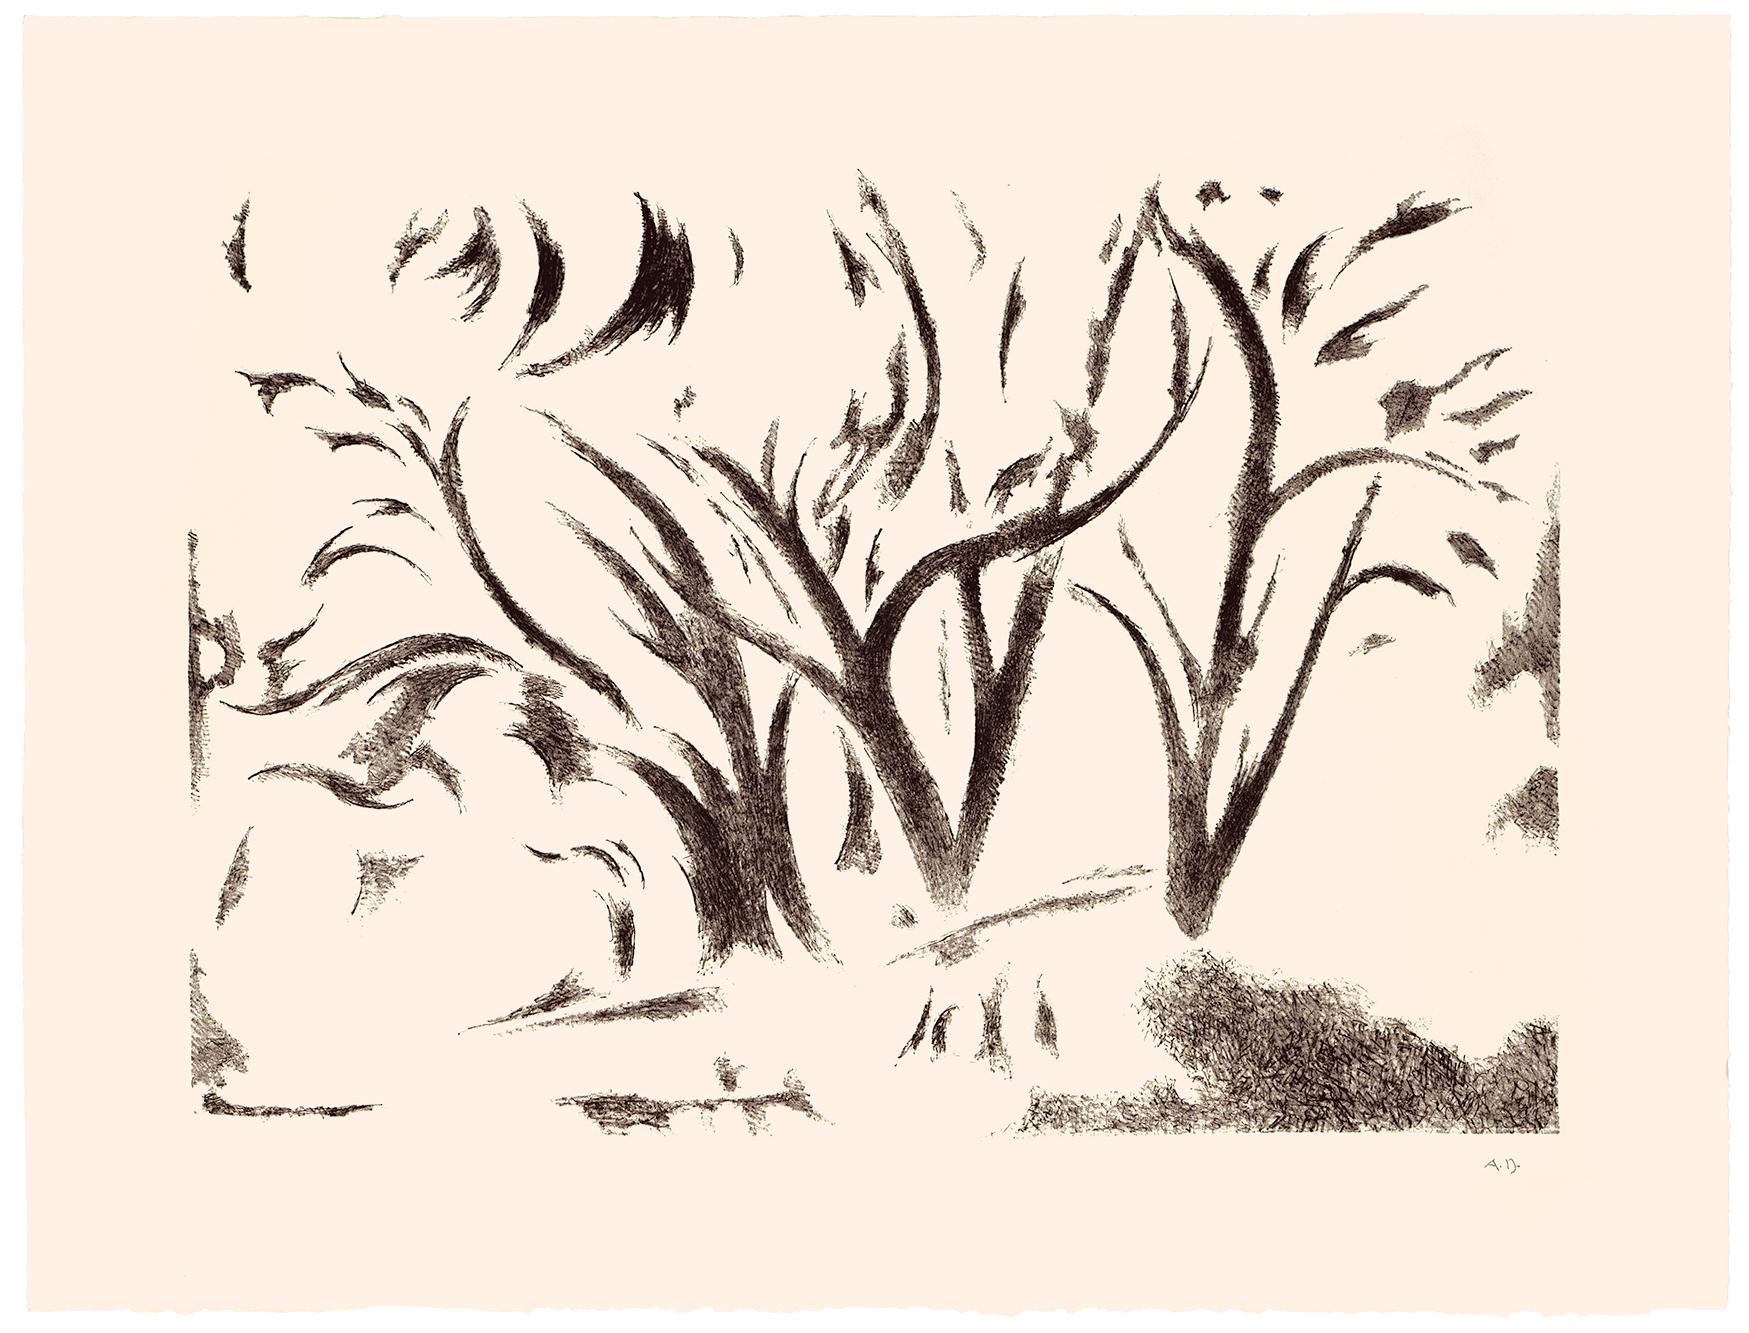 Trees in Ranchitos I, 1970er Jahre, Taos Modernismus – Print von Andrew Dasburg